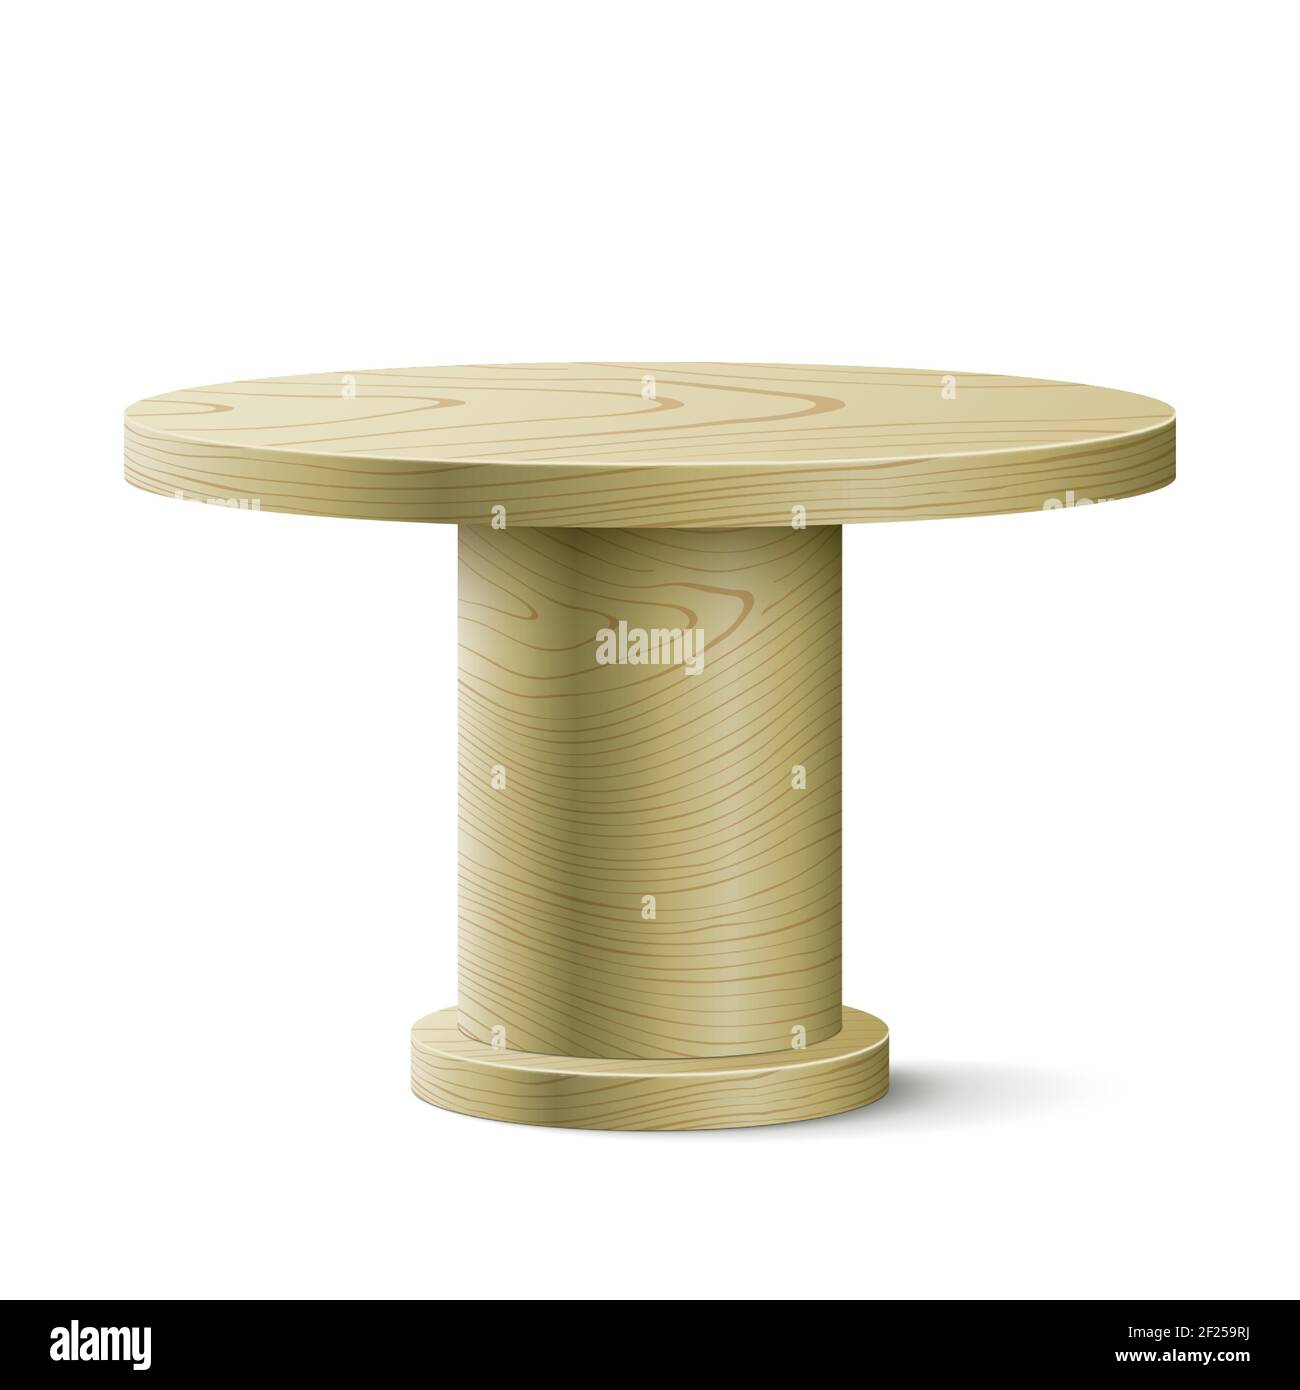 Tavolo ovale in legno isolato su sfondo bianco. Tavolo vettoriale in legno con spazio libero per un oggetto o per il posizionamento del prodotto. Illustrazione Vettoriale